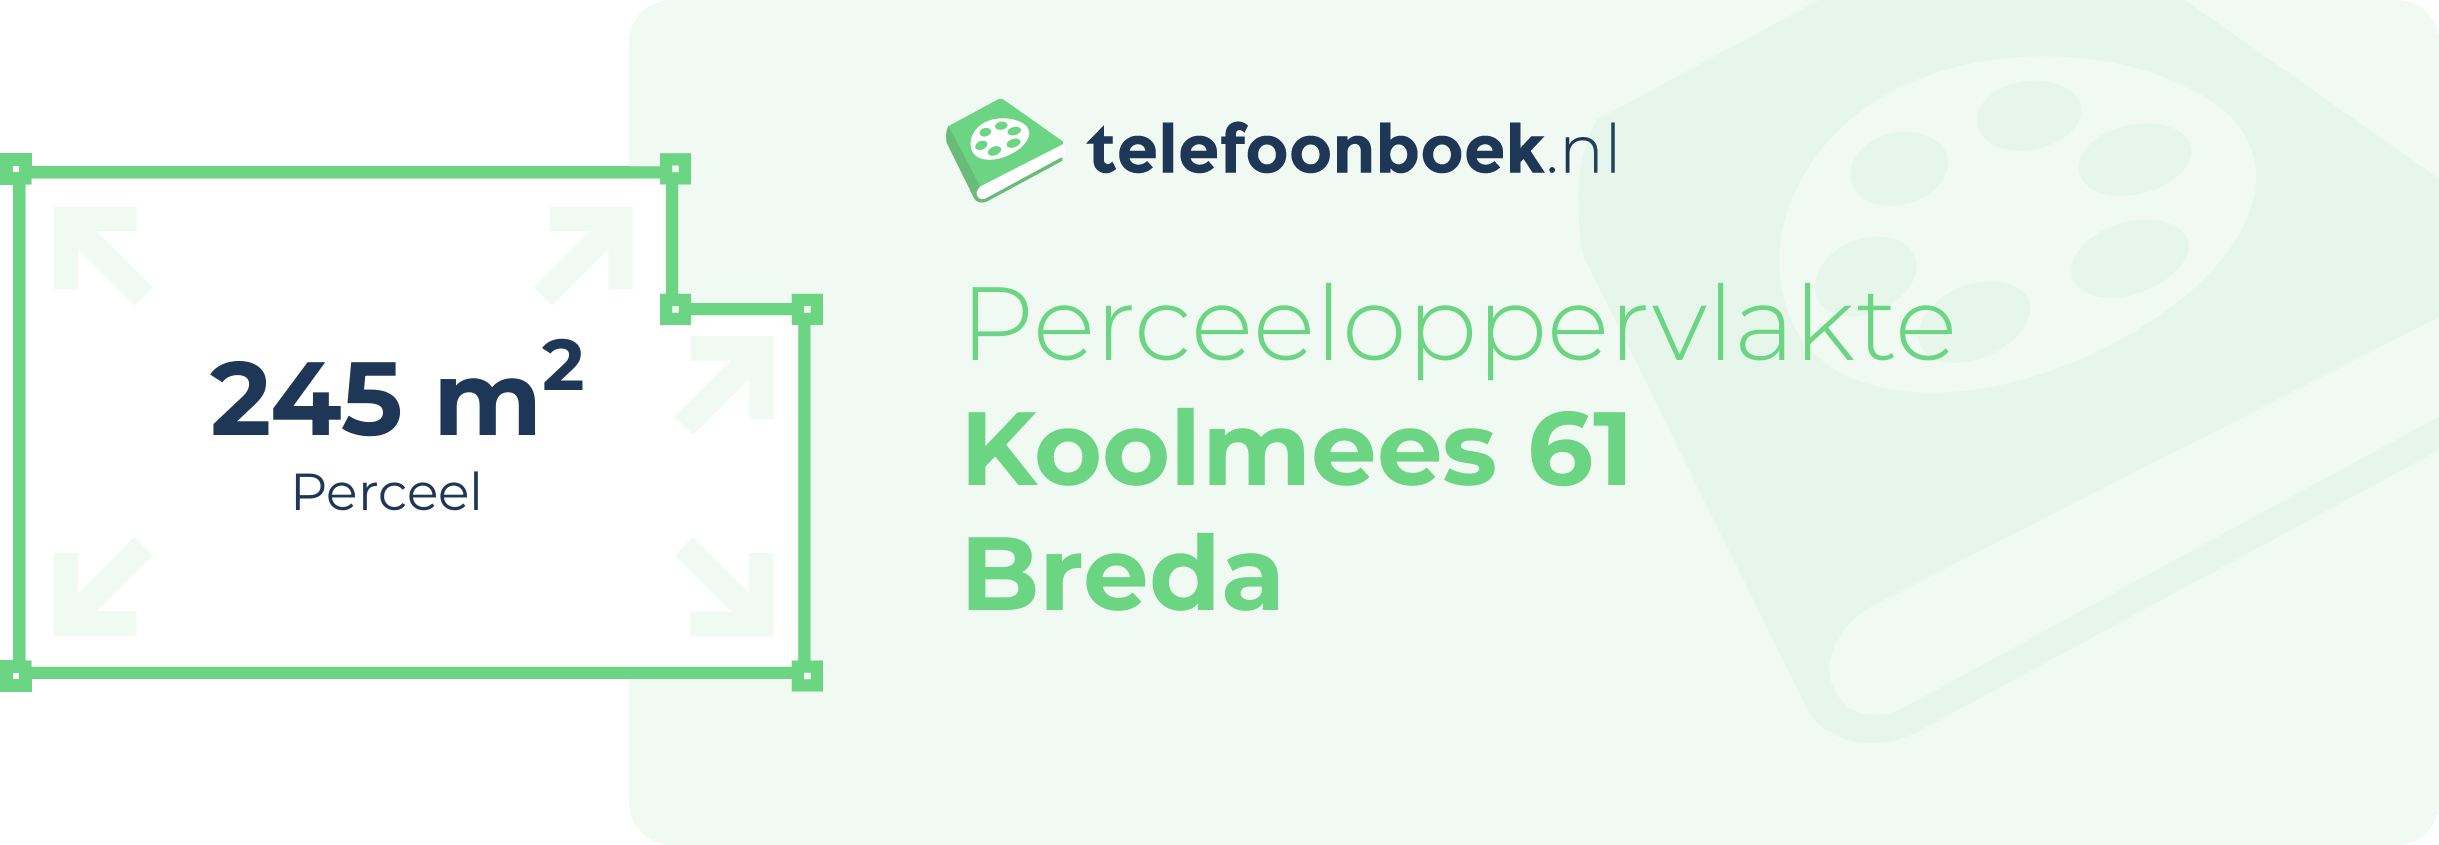 Perceeloppervlakte Koolmees 61 Breda